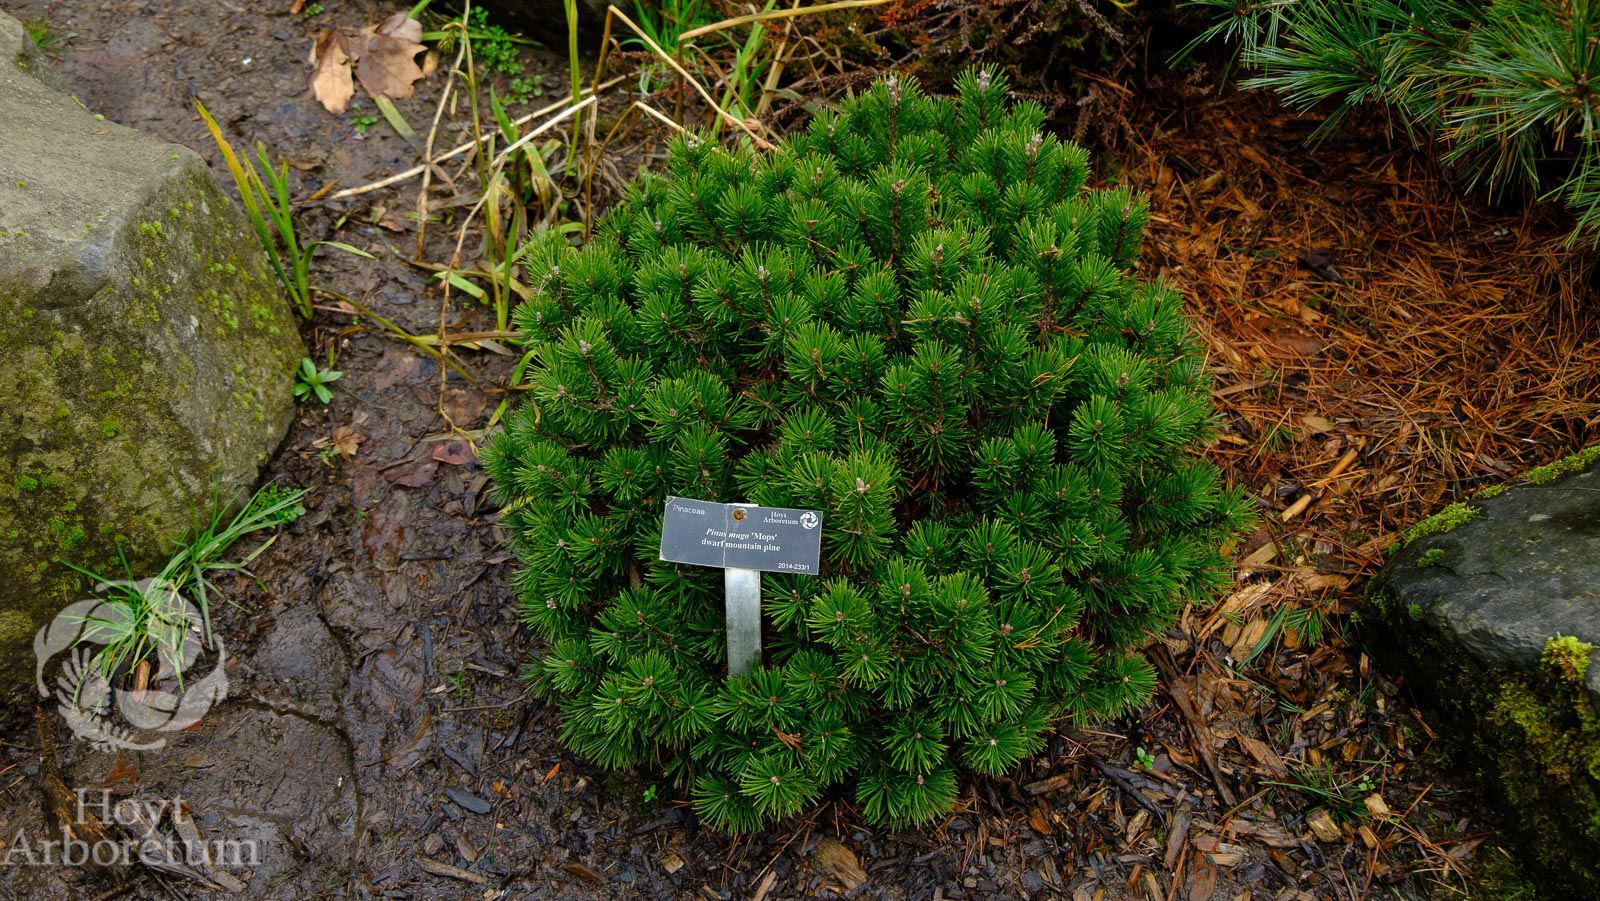 Pinus mugo 'Mops' - dwarf mountain pine